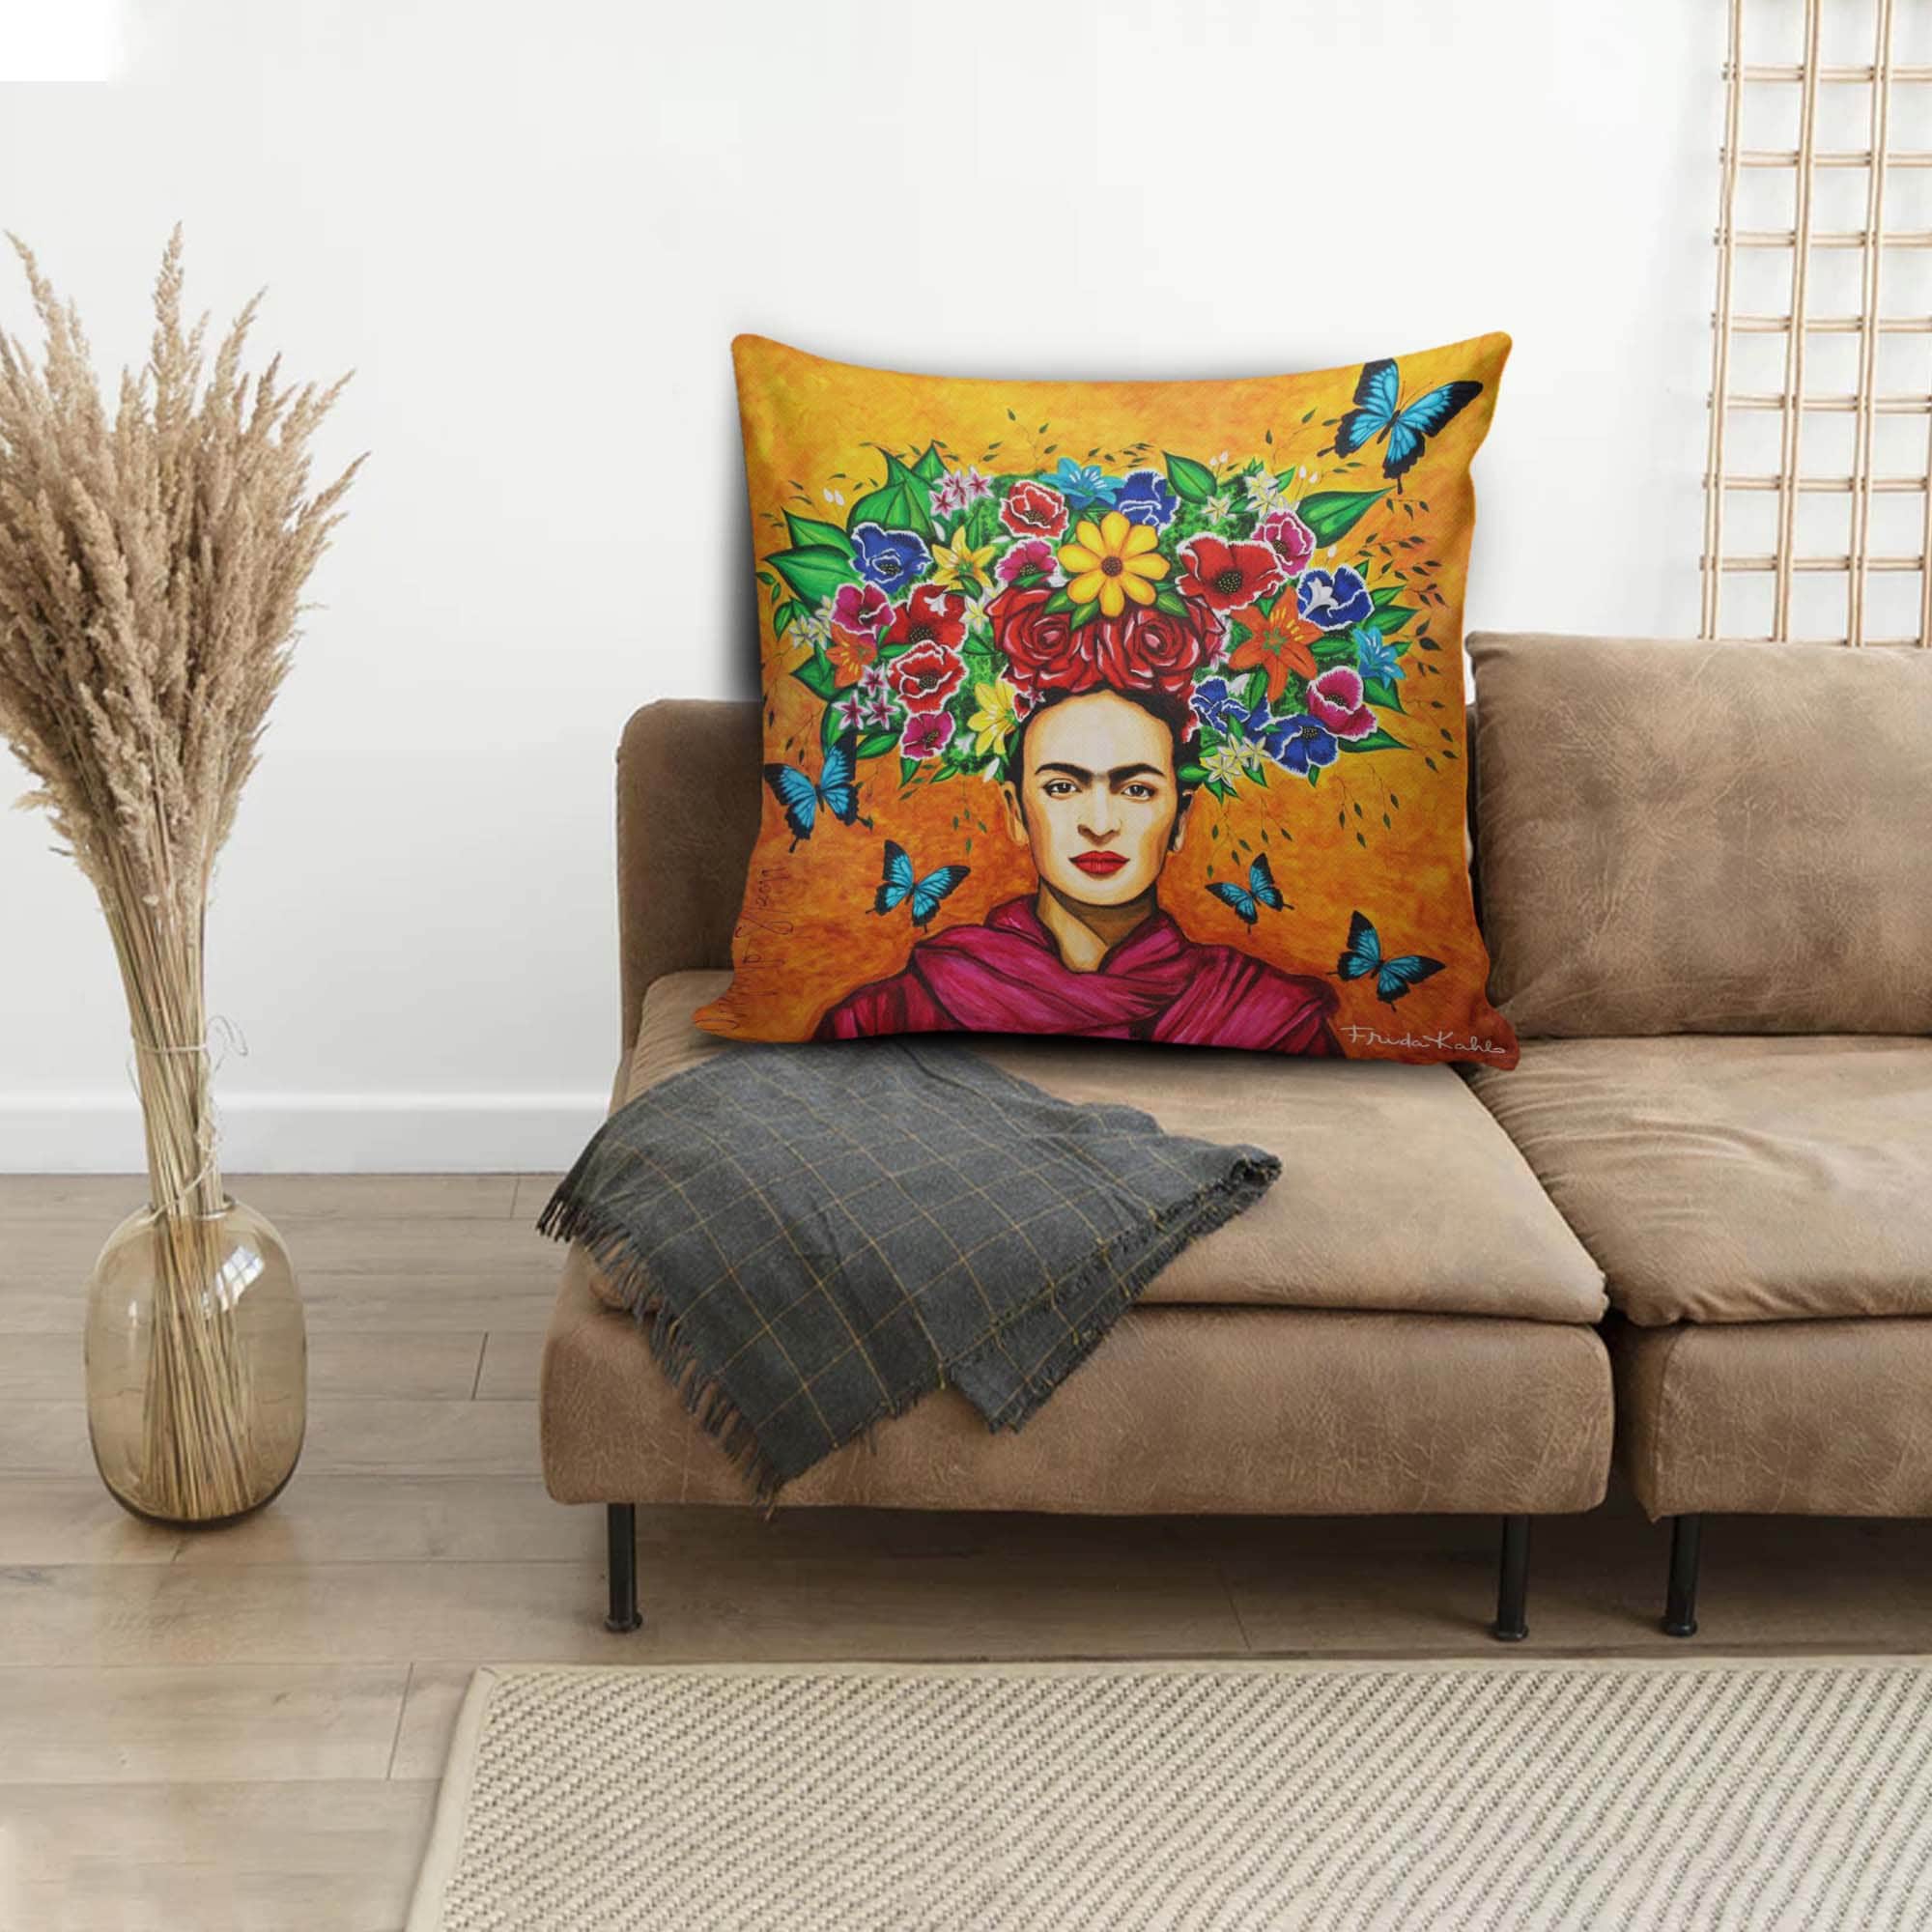 Fridakhalo Pillow Frida kahlo Cushion Cushion with cover and | Etsy